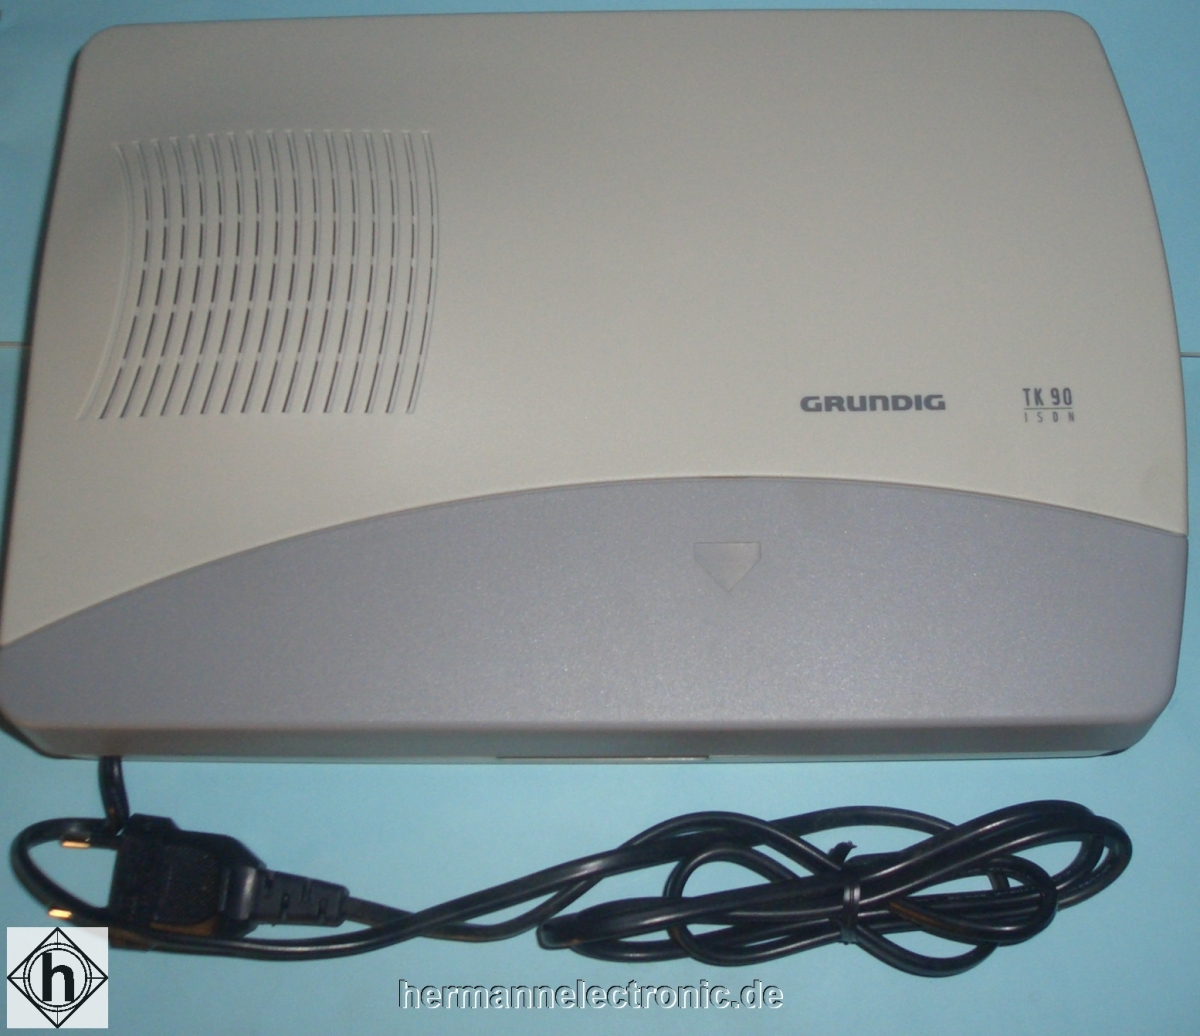 GrundigTK-90 ISDN Telefonanlage für bis zu 4 analoge Telefone/Endgeräte anschliessbarArtikel-Nr: 782256L